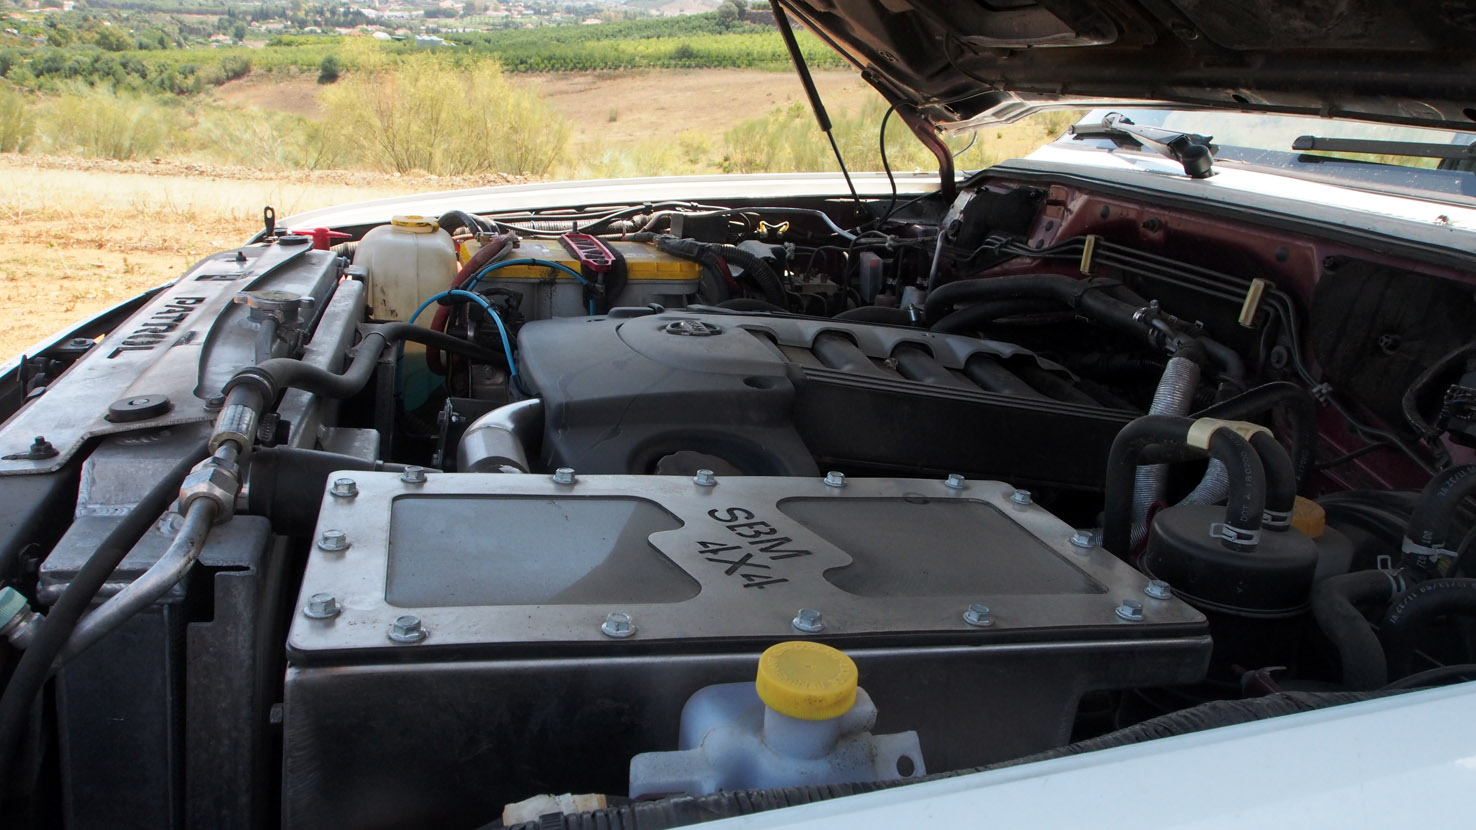 Caja de filtro de aire de mayores dimensiones para Nissan Patrol GR Y61.